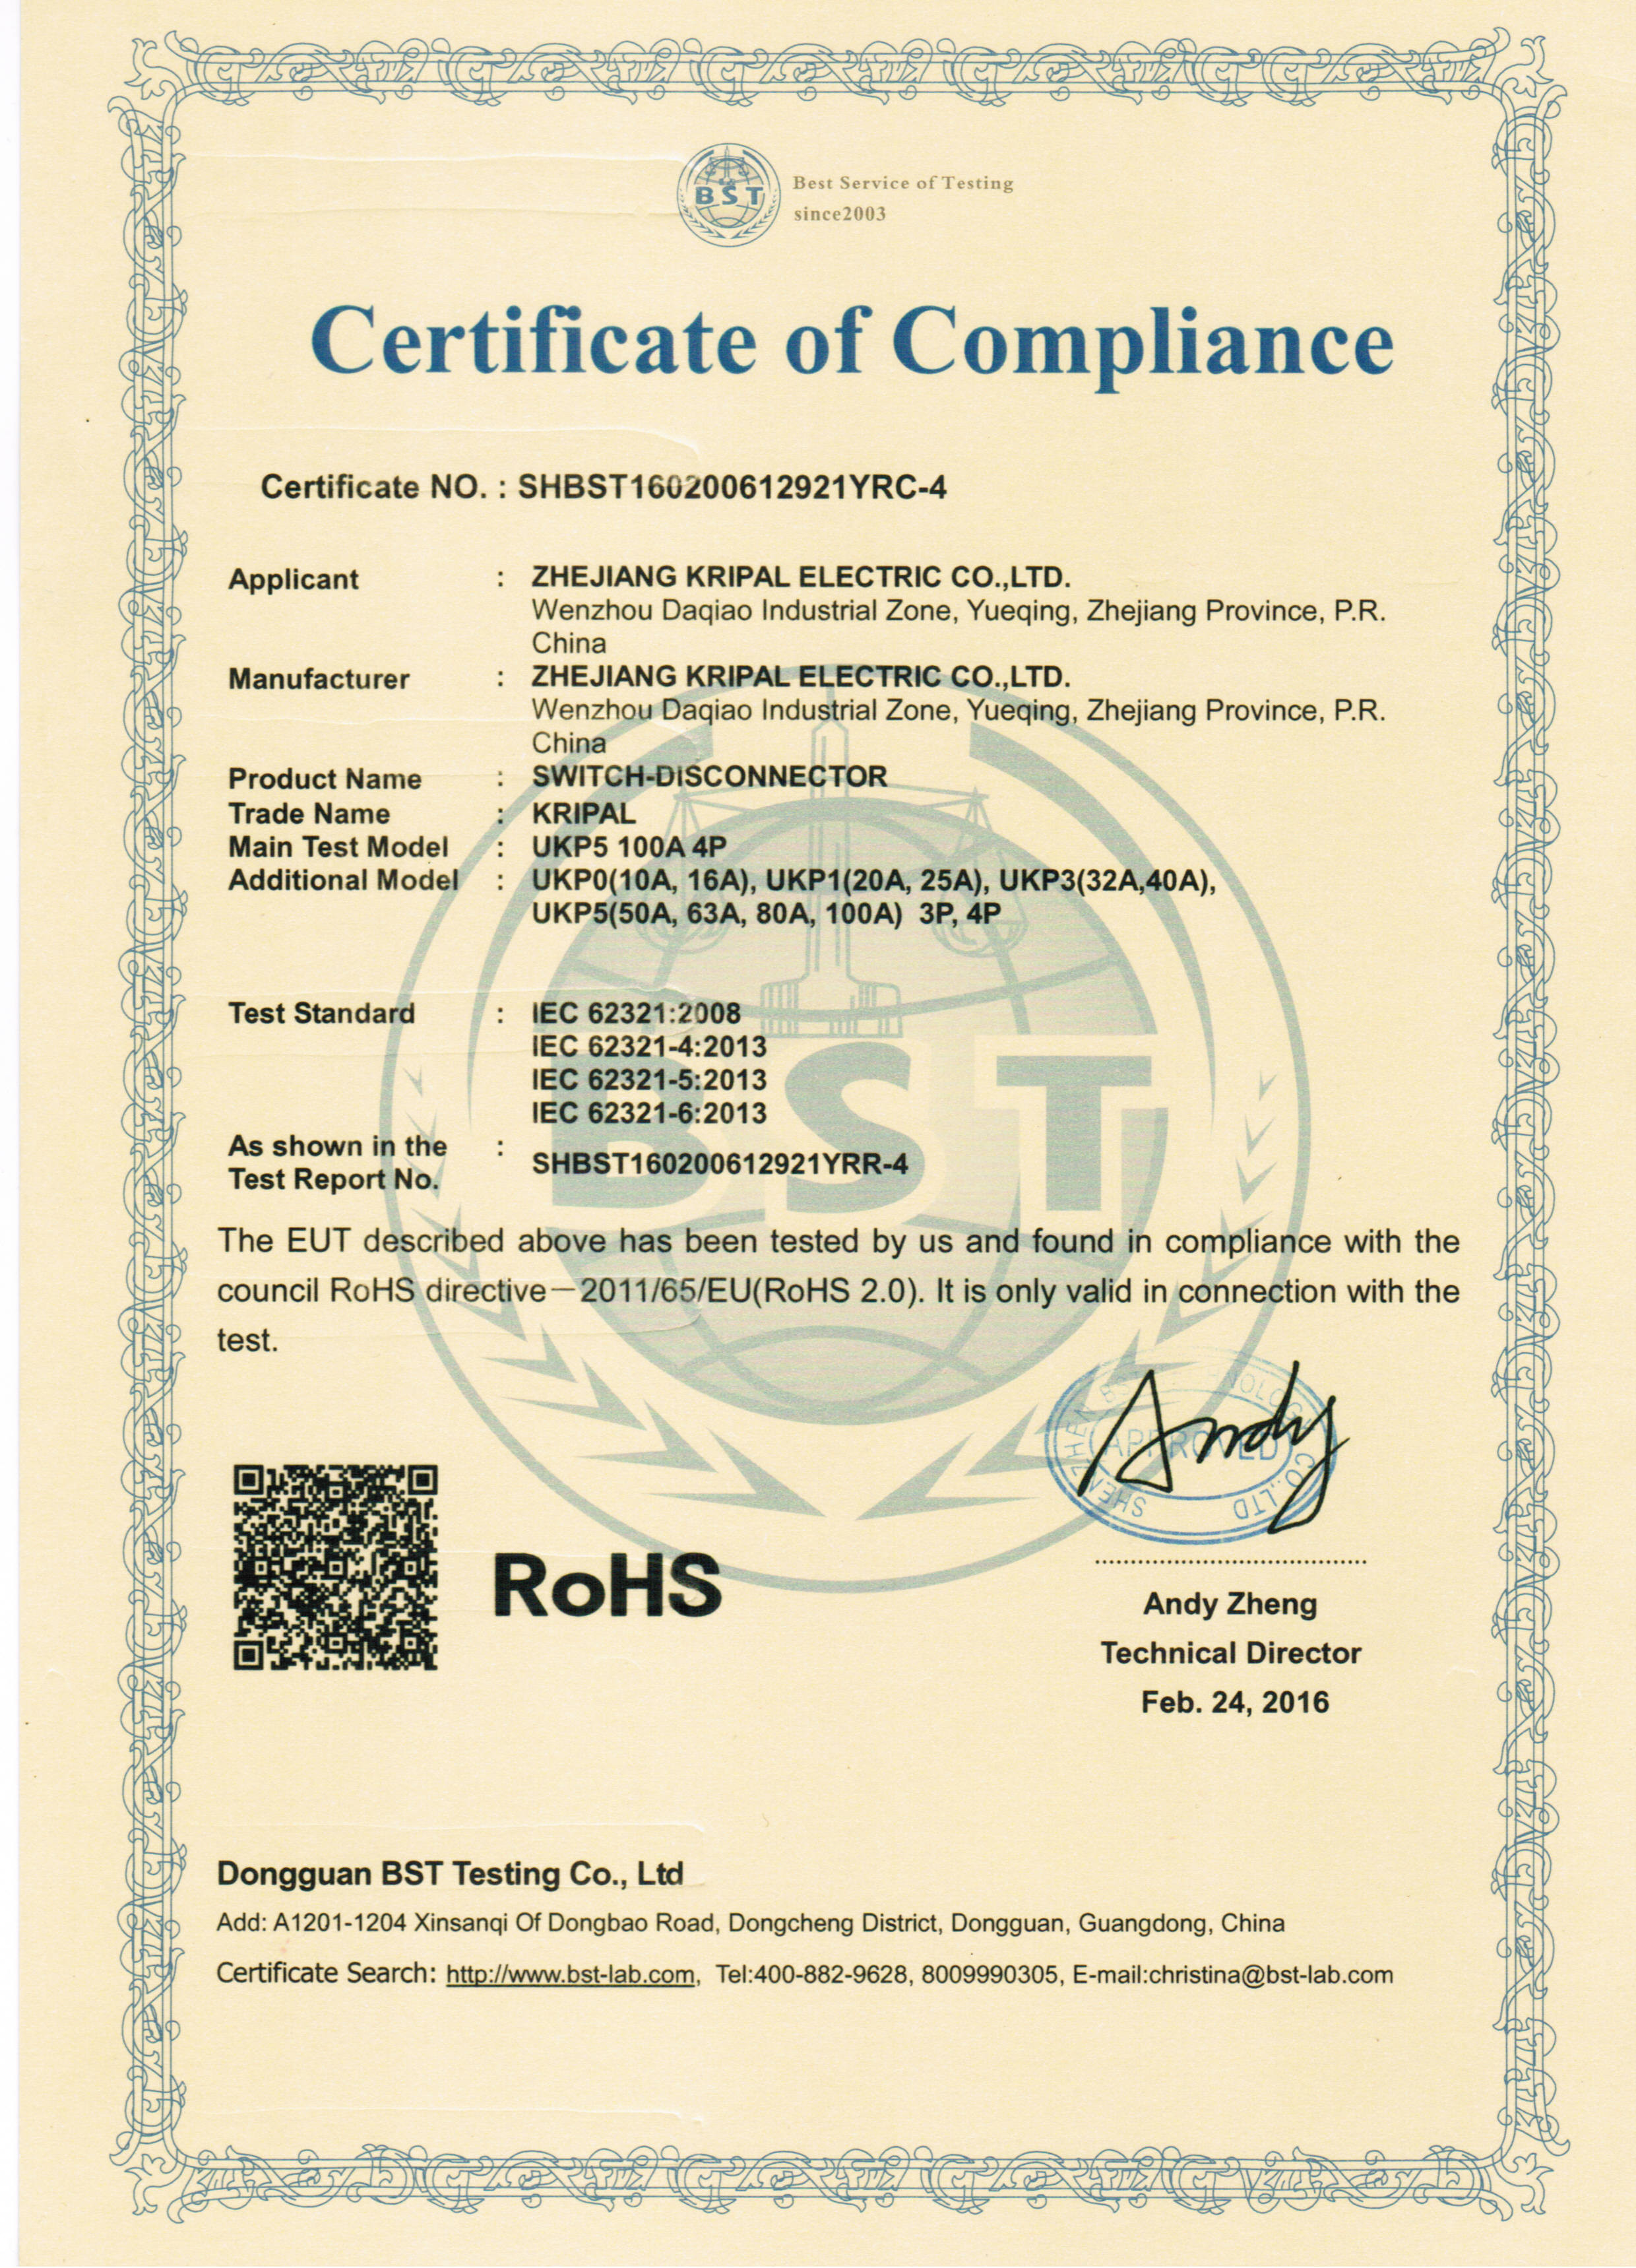 China Zhejiang KRIPAL Electric Co., Ltd. Certification